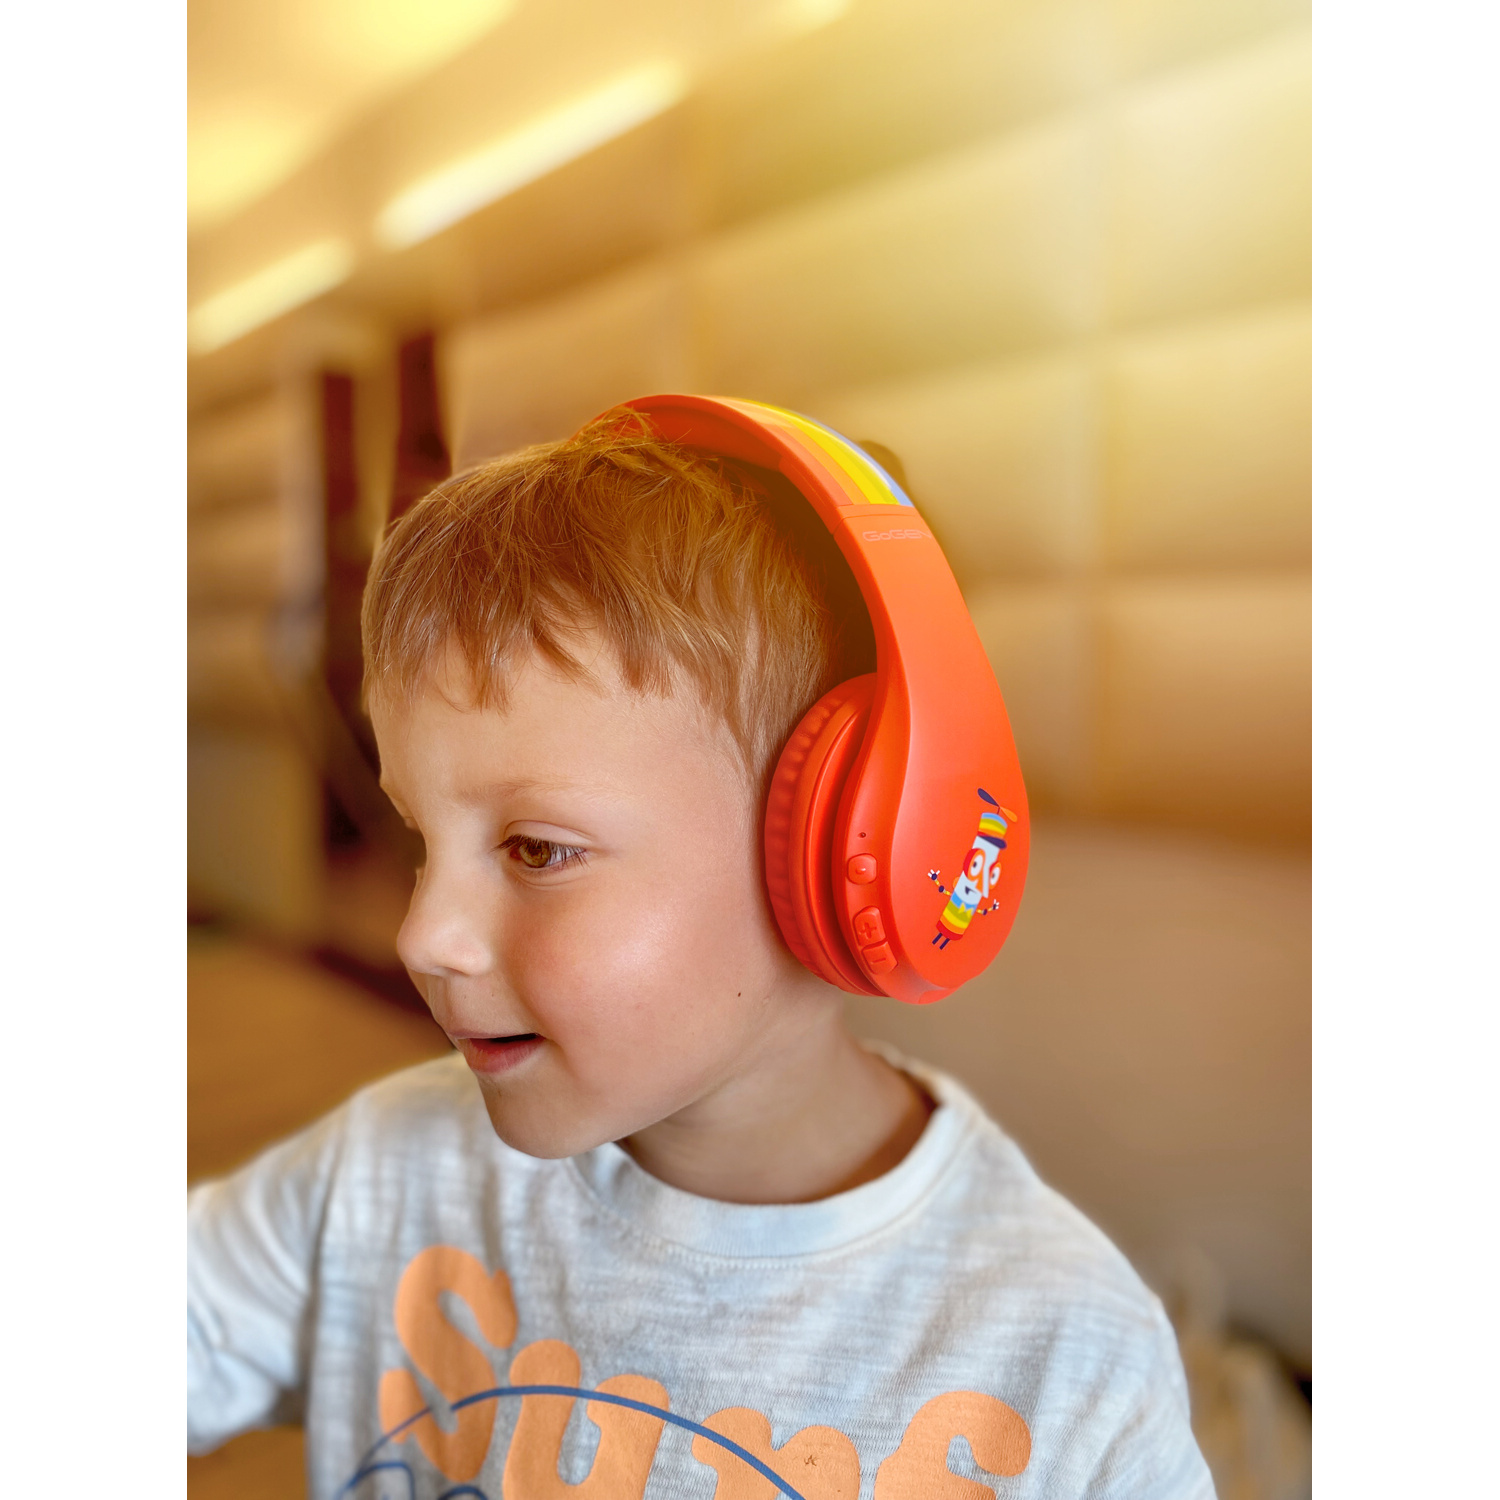 GOGEN DECKO R, SLECHY Rot Bluetooth DUO Over-ear Kopfhörer